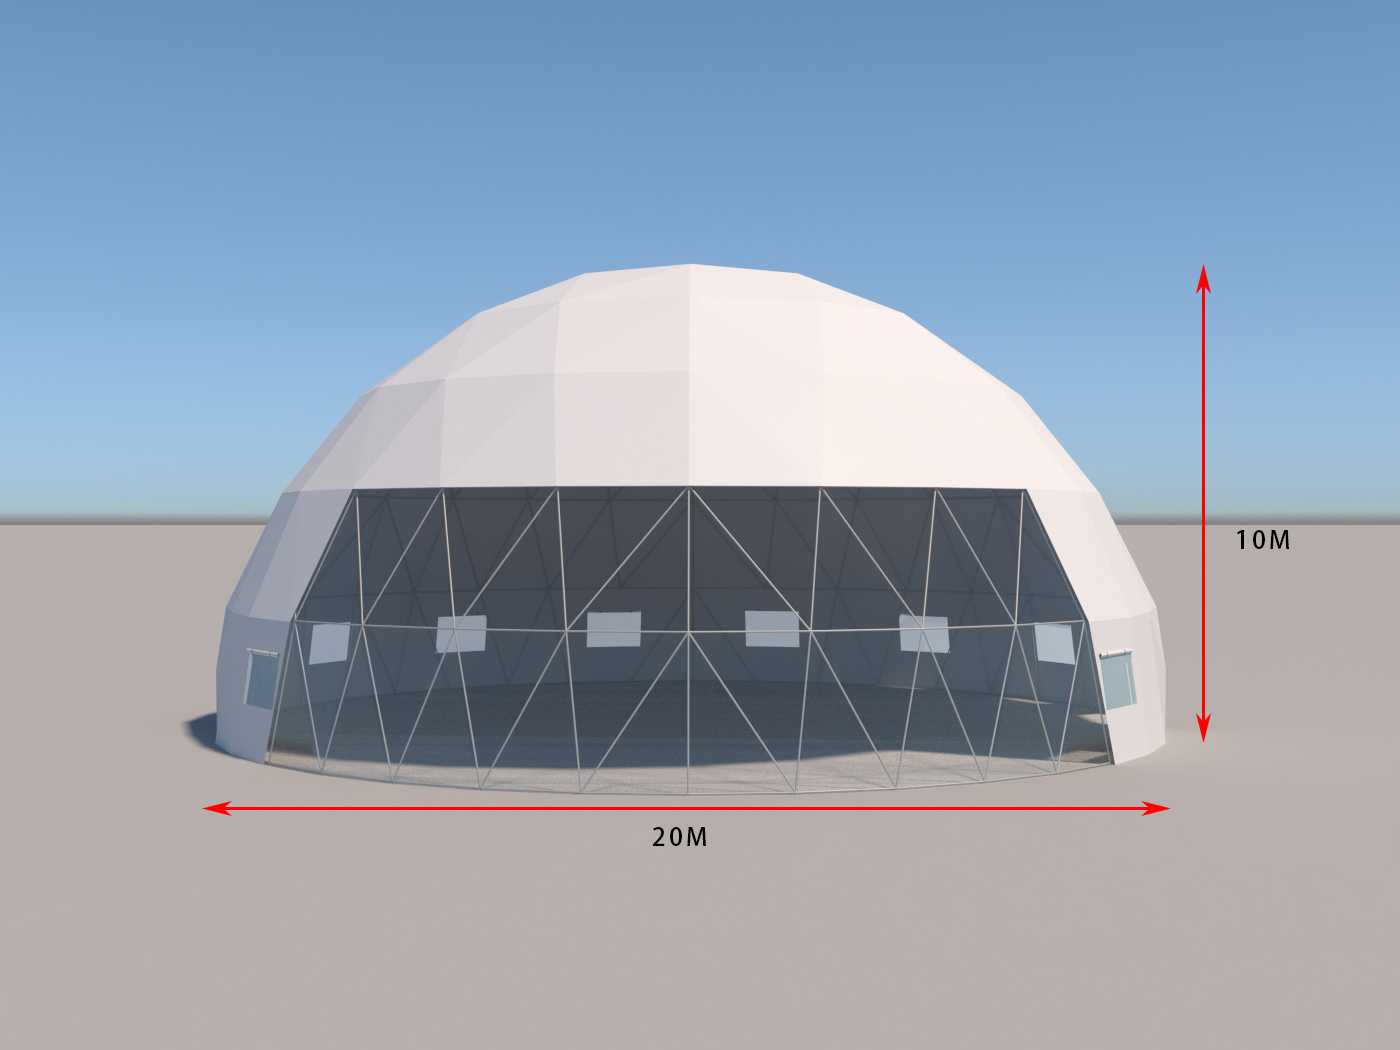 خيمة مناسبات ذات قبة جيوديسية كبيرة بطول 20 مترًا للحفلات التجارية